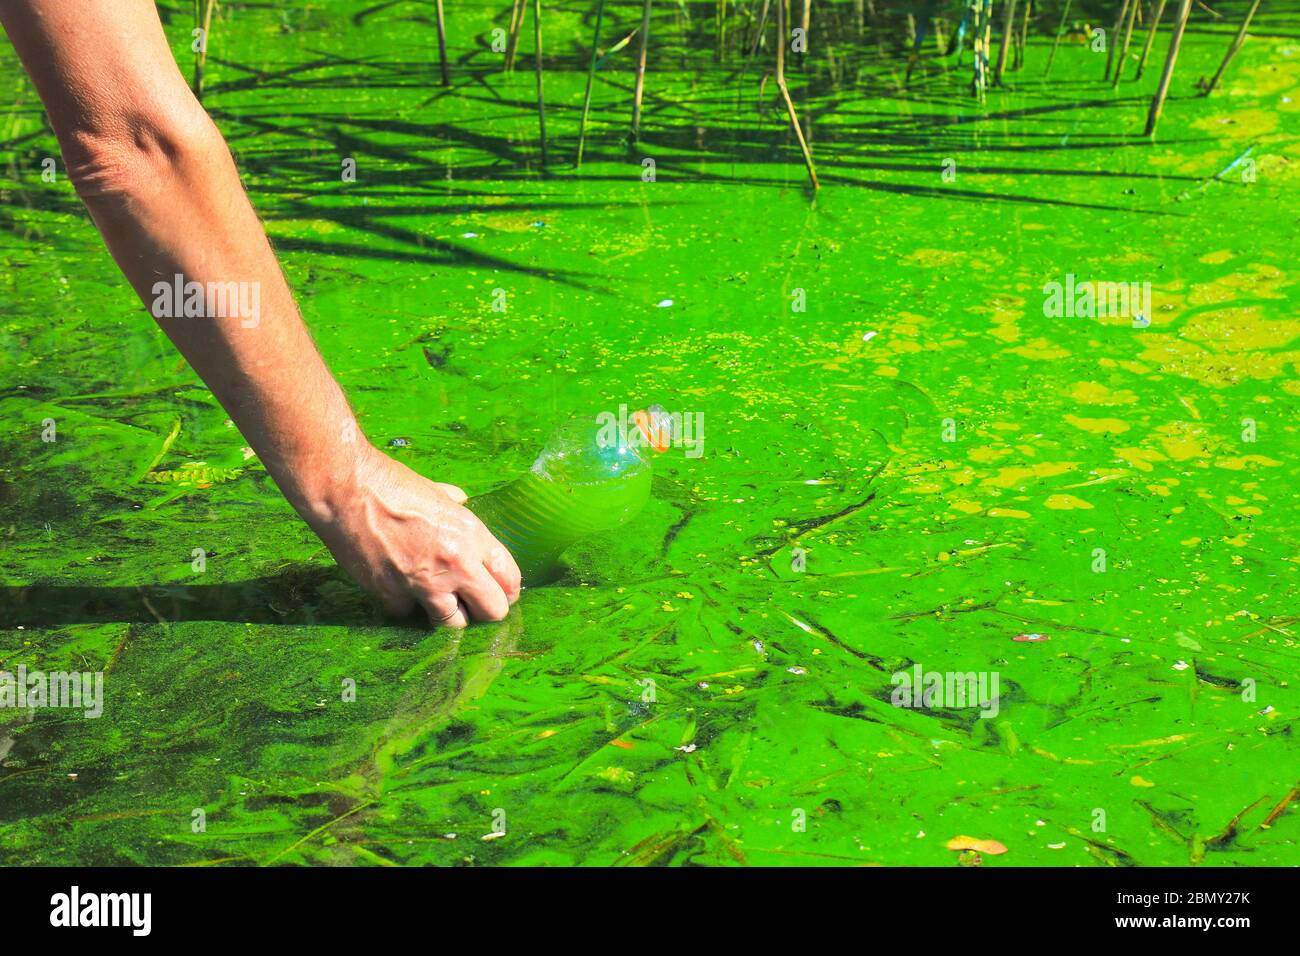 Globale Verschmutzung der Umwelt und des Wassers. Ein Mann sammelt grünes Wasser in einer Flasche zur Analyse. Wasserblüte, Fortpflanzung von Phytoplankton, Algen Stockfoto